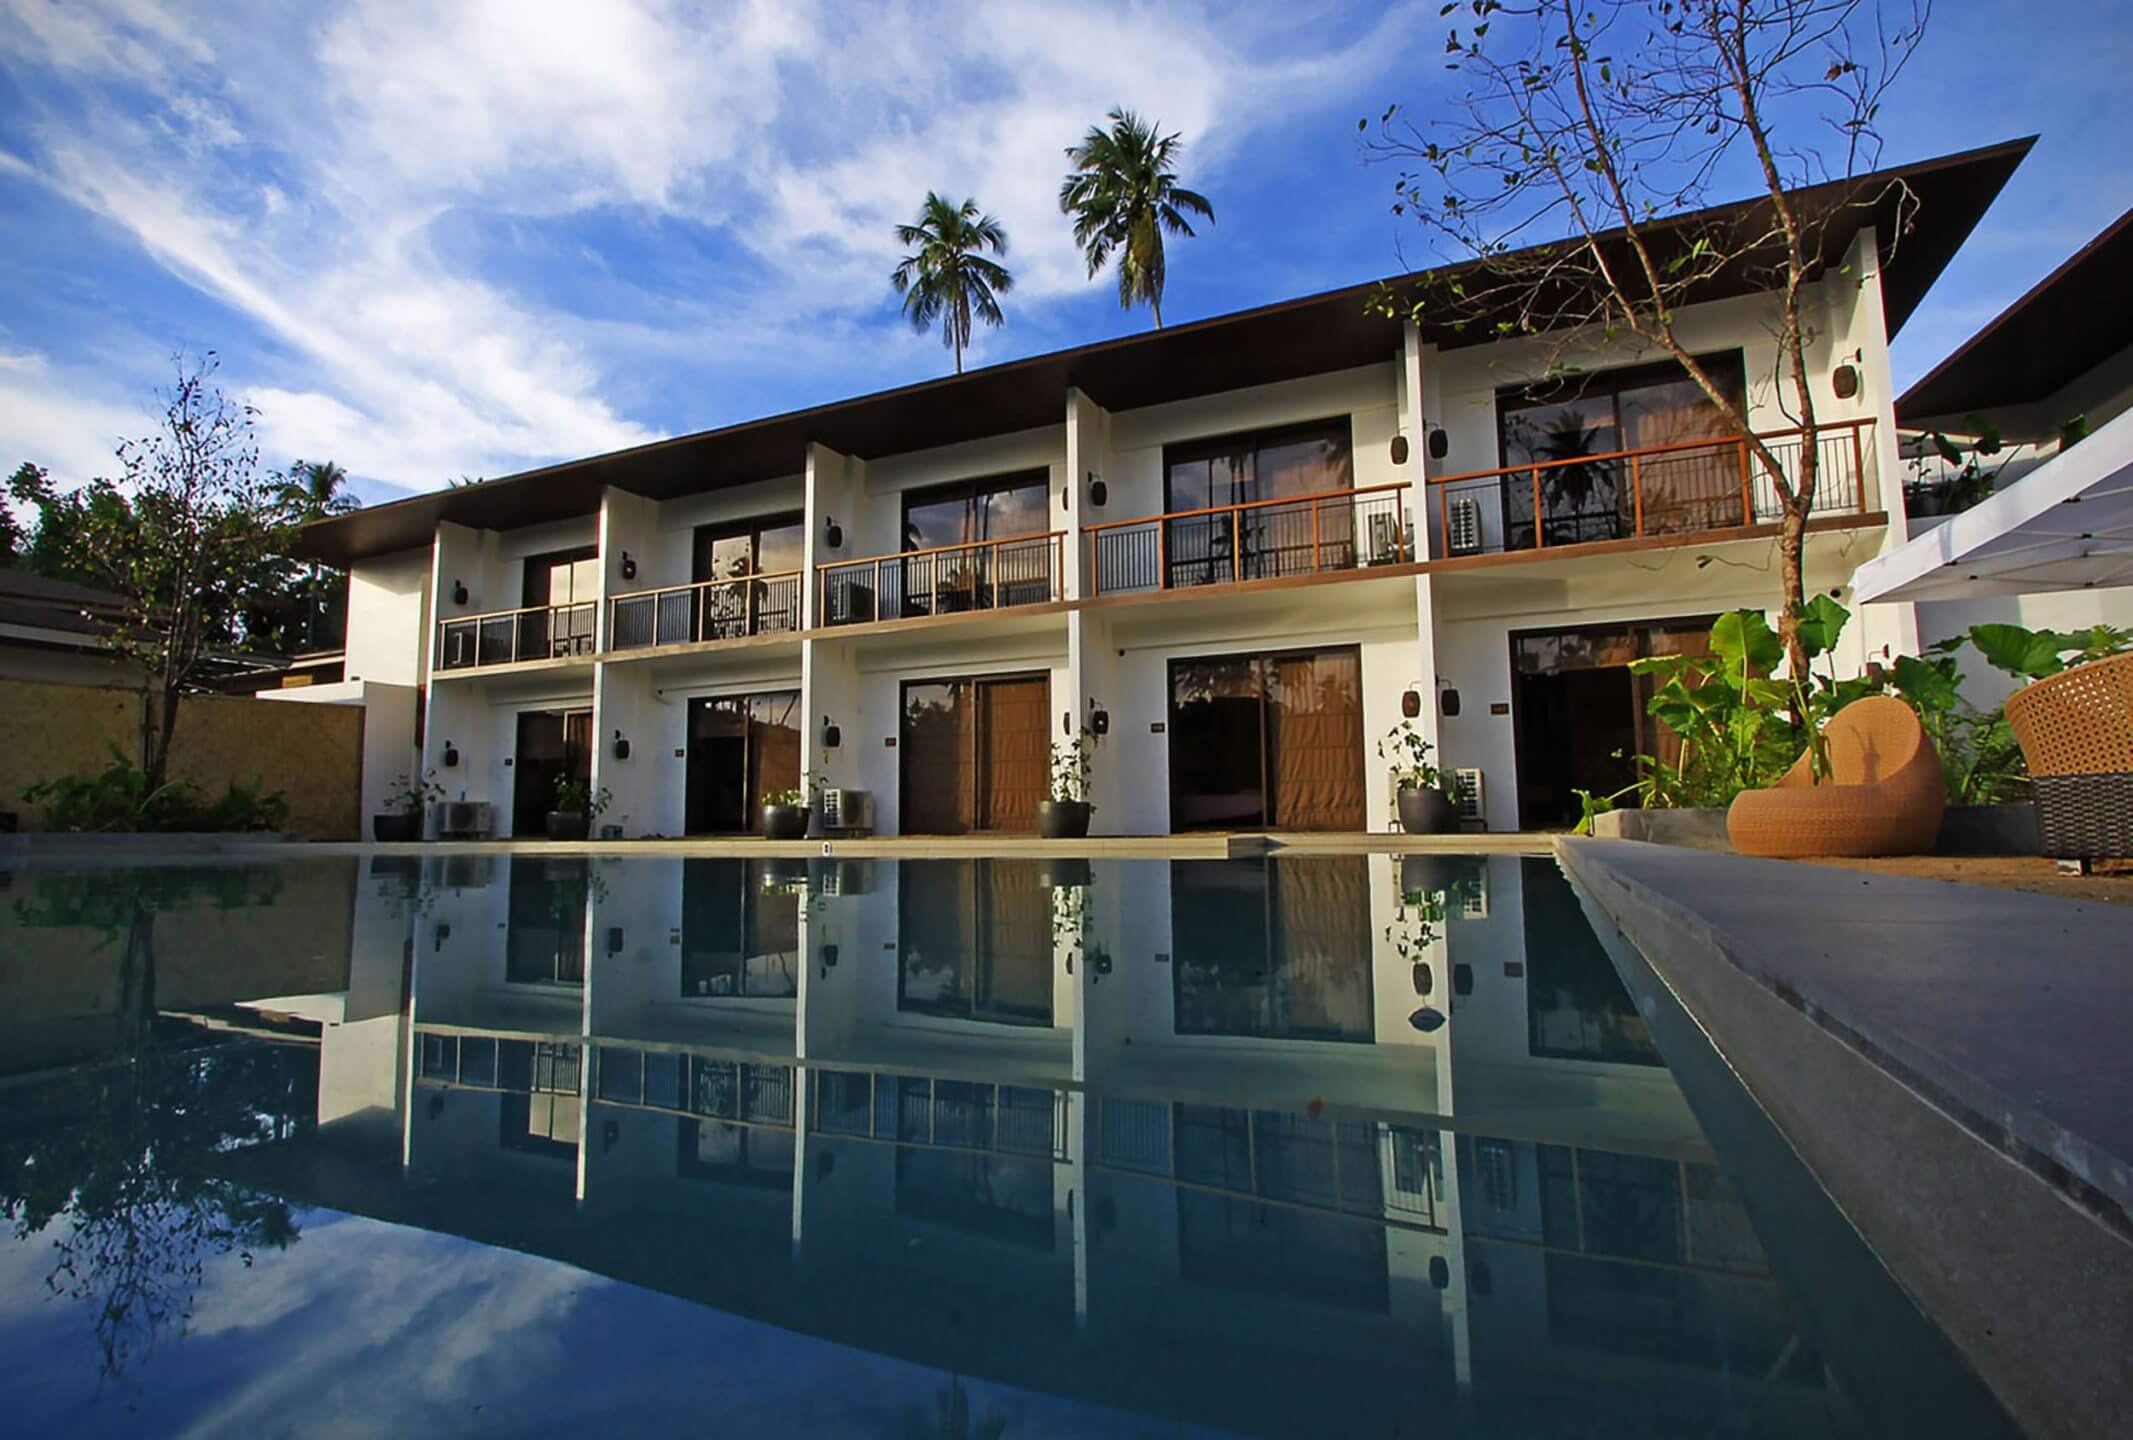 Hotel exterior and pool of El Nido B&B brand Casa Kalaw